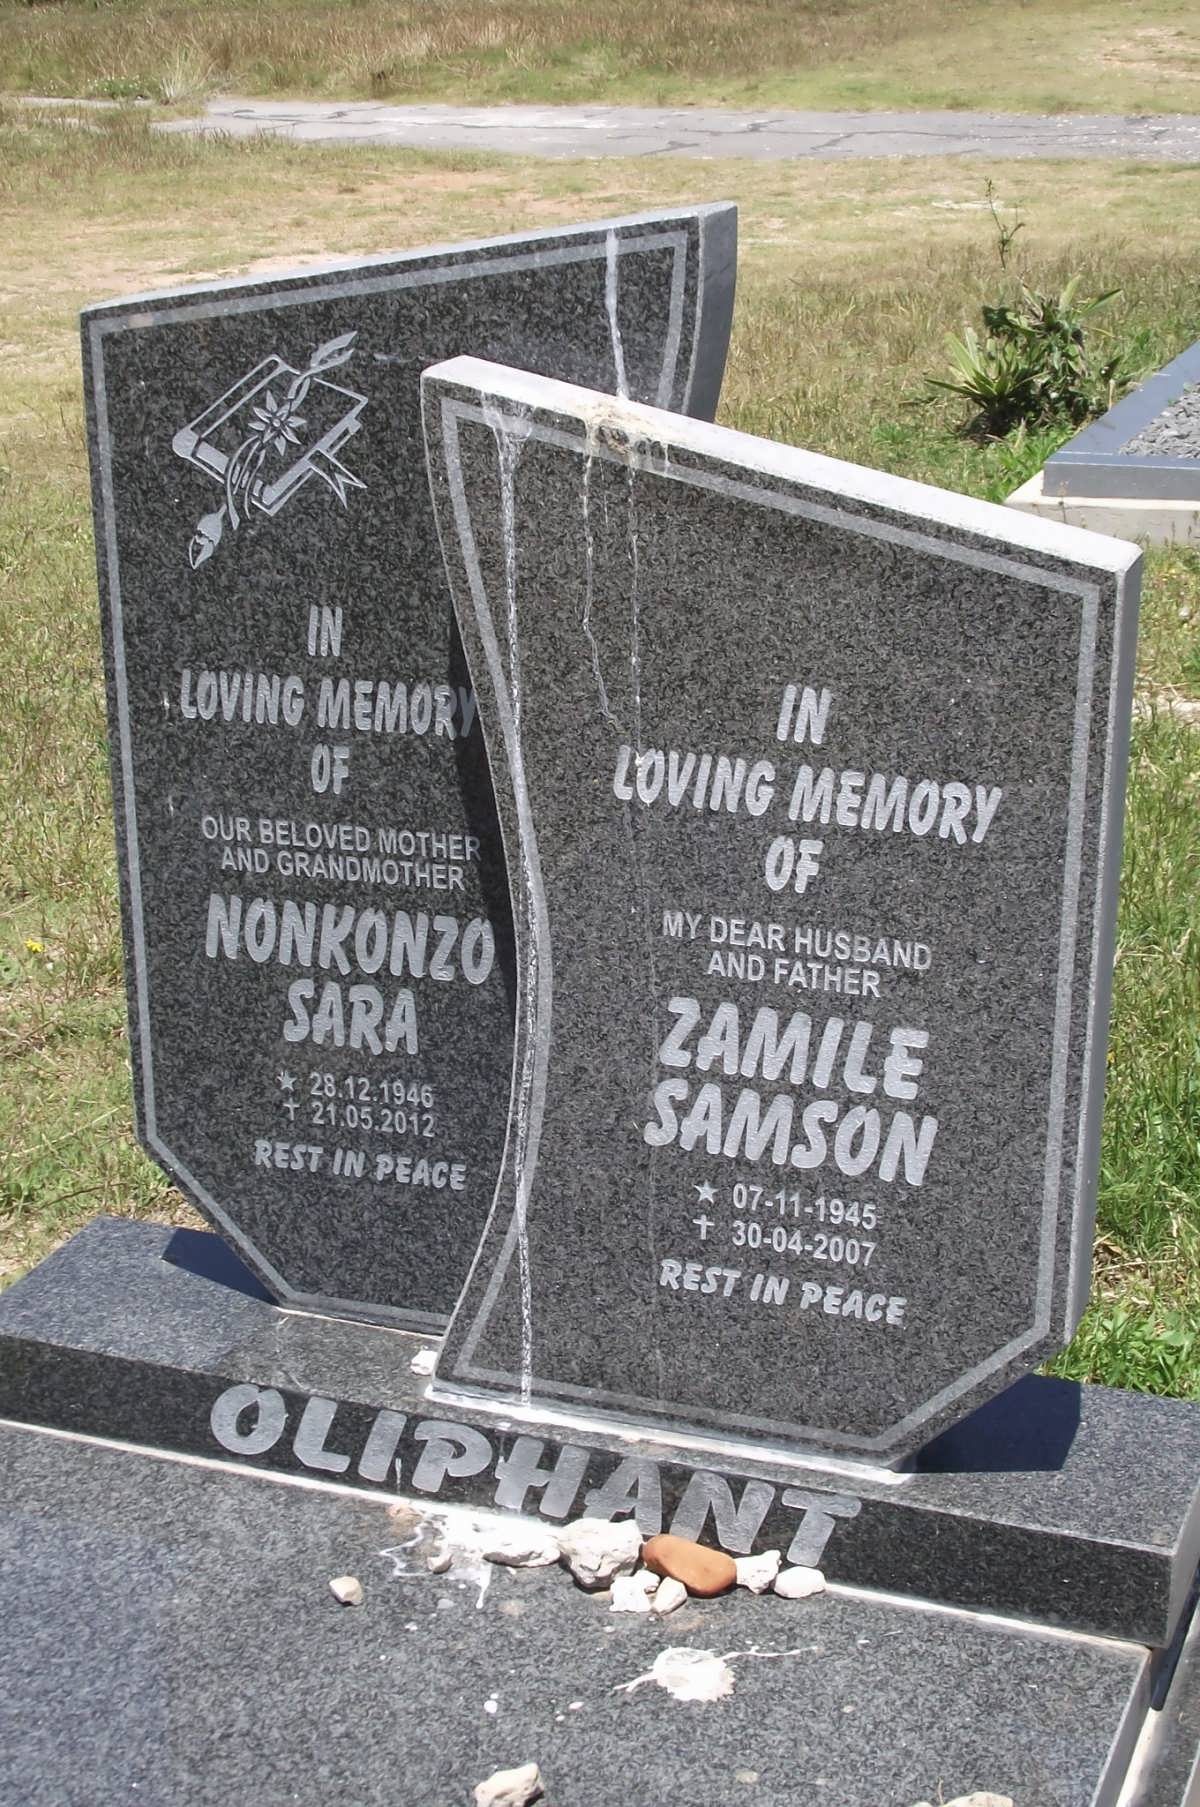 OLIPHANT Zamile Samson 1945-2007 & Nonkonzo Sara 1946-2012